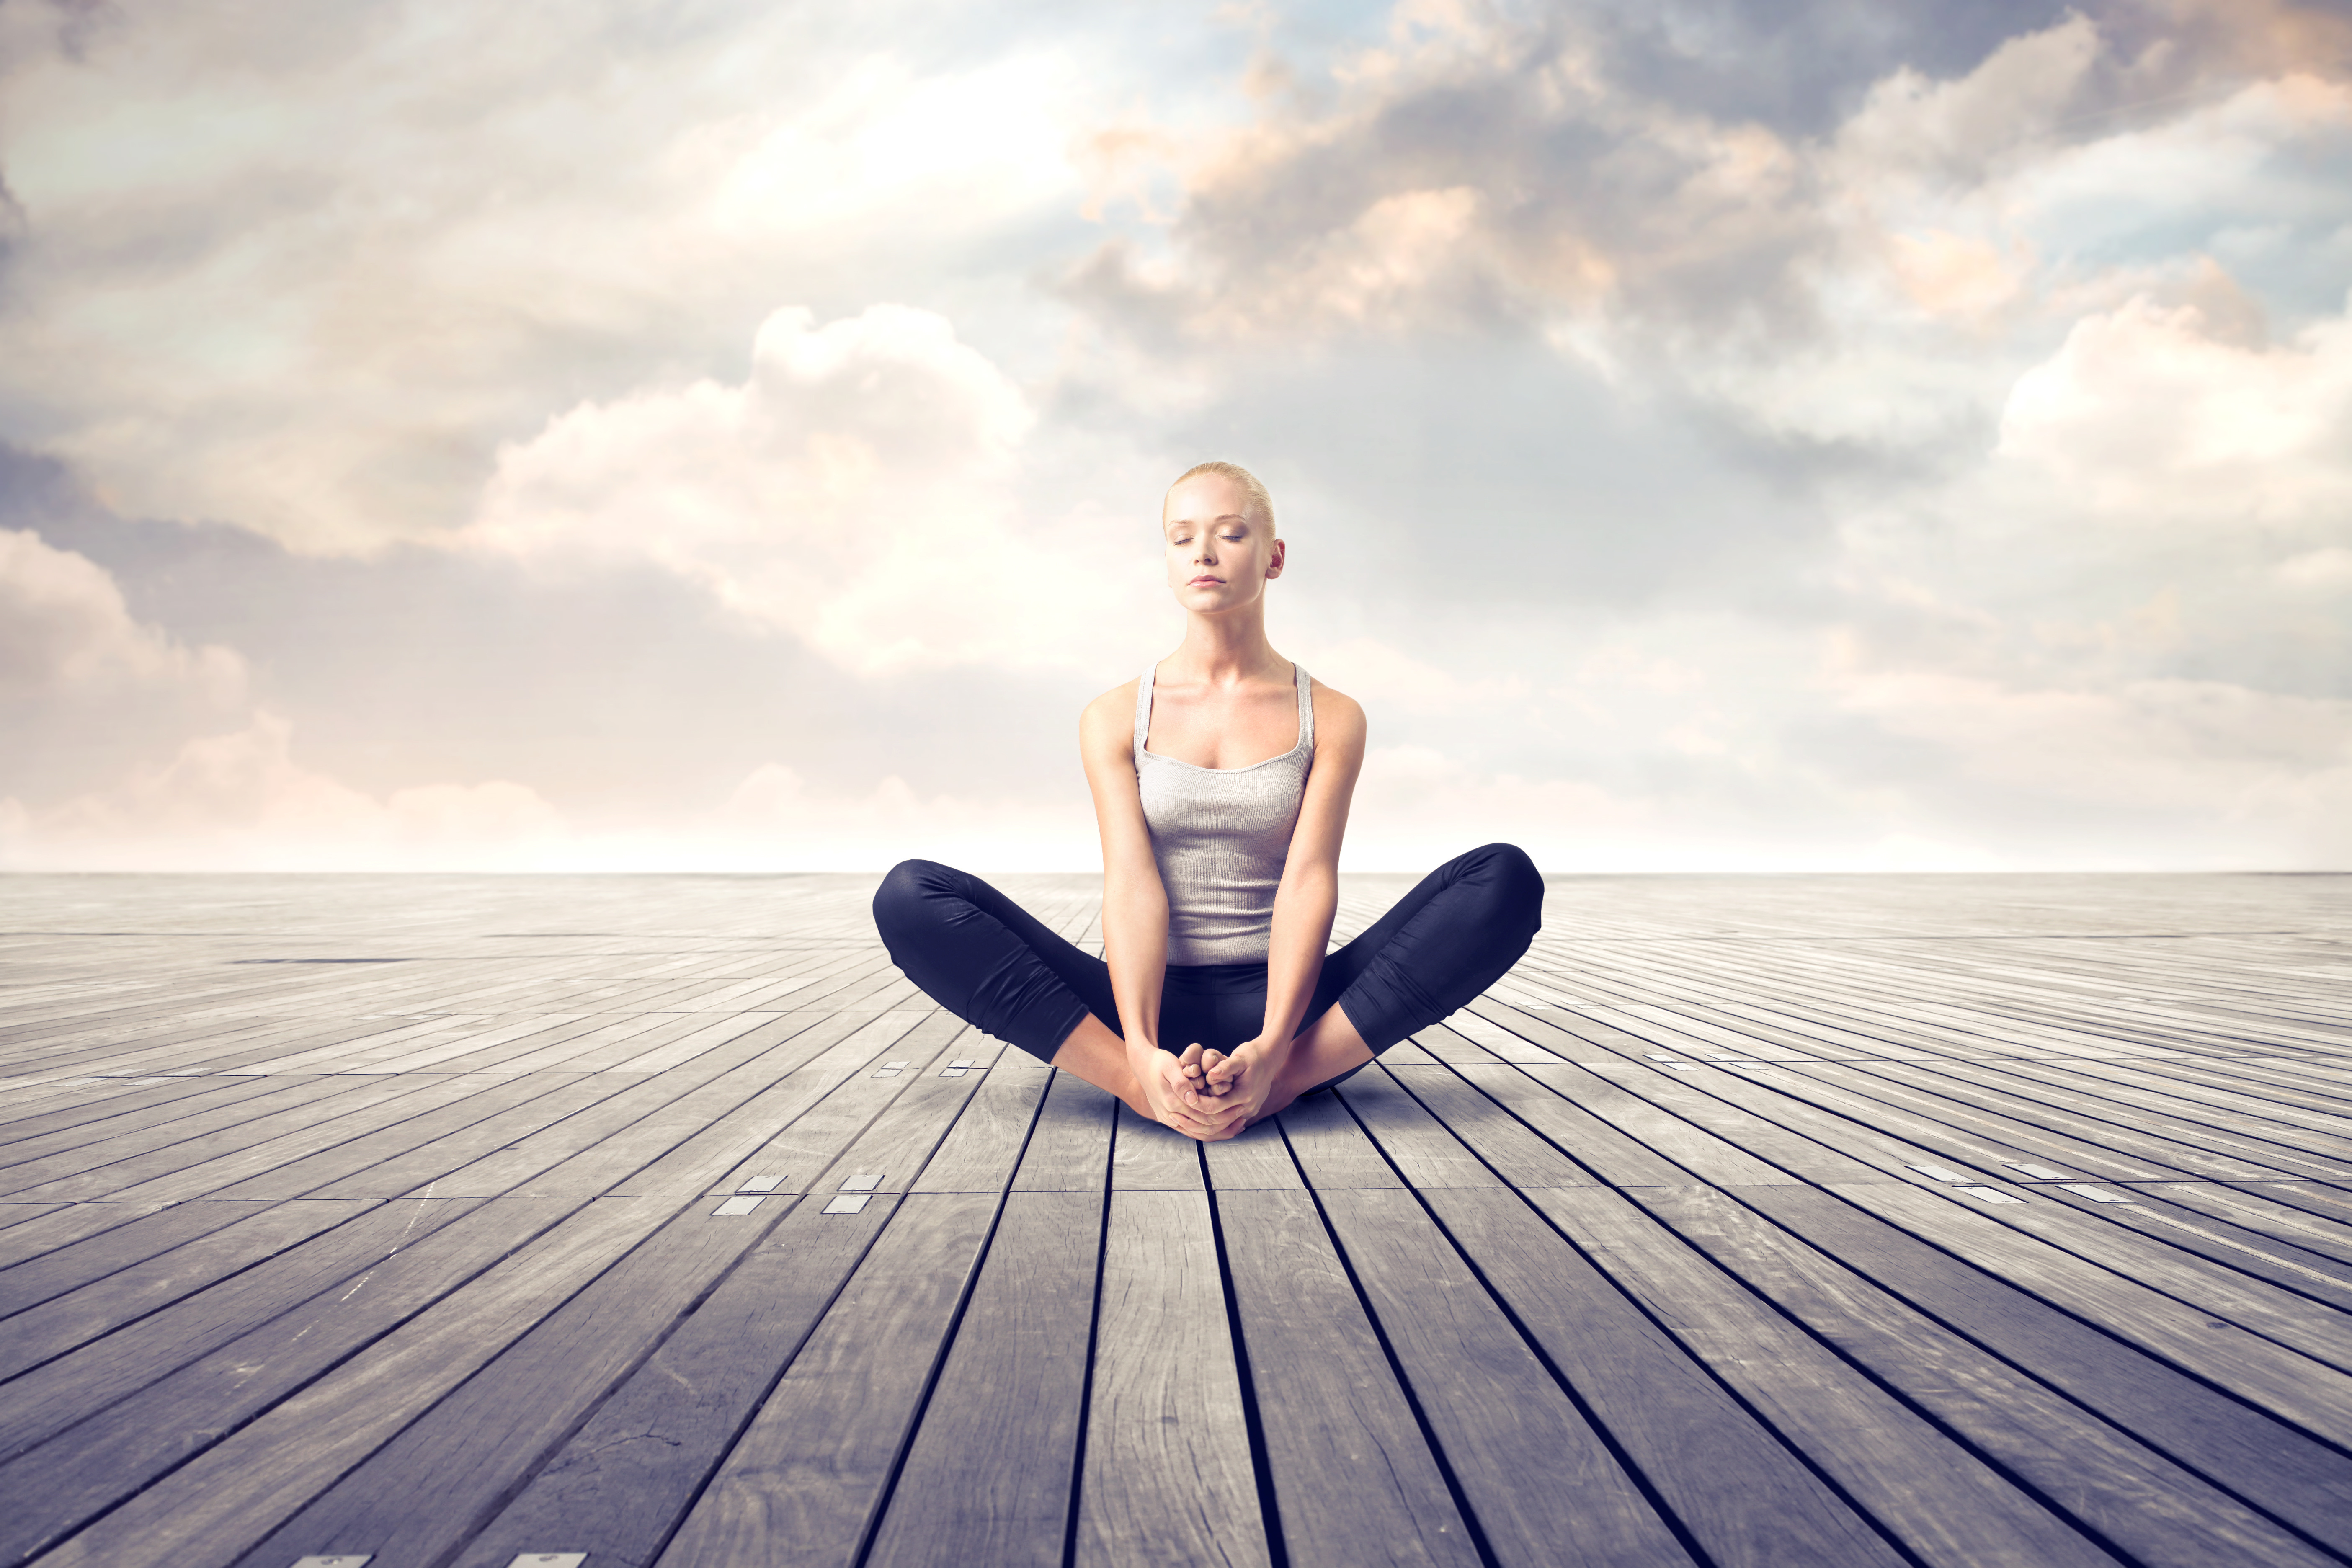 Релаксирующее видео. Медитация майндфулнесс. Спокойствие и равновесие. Девушка в позе лотоса. Девушка спокойствие.